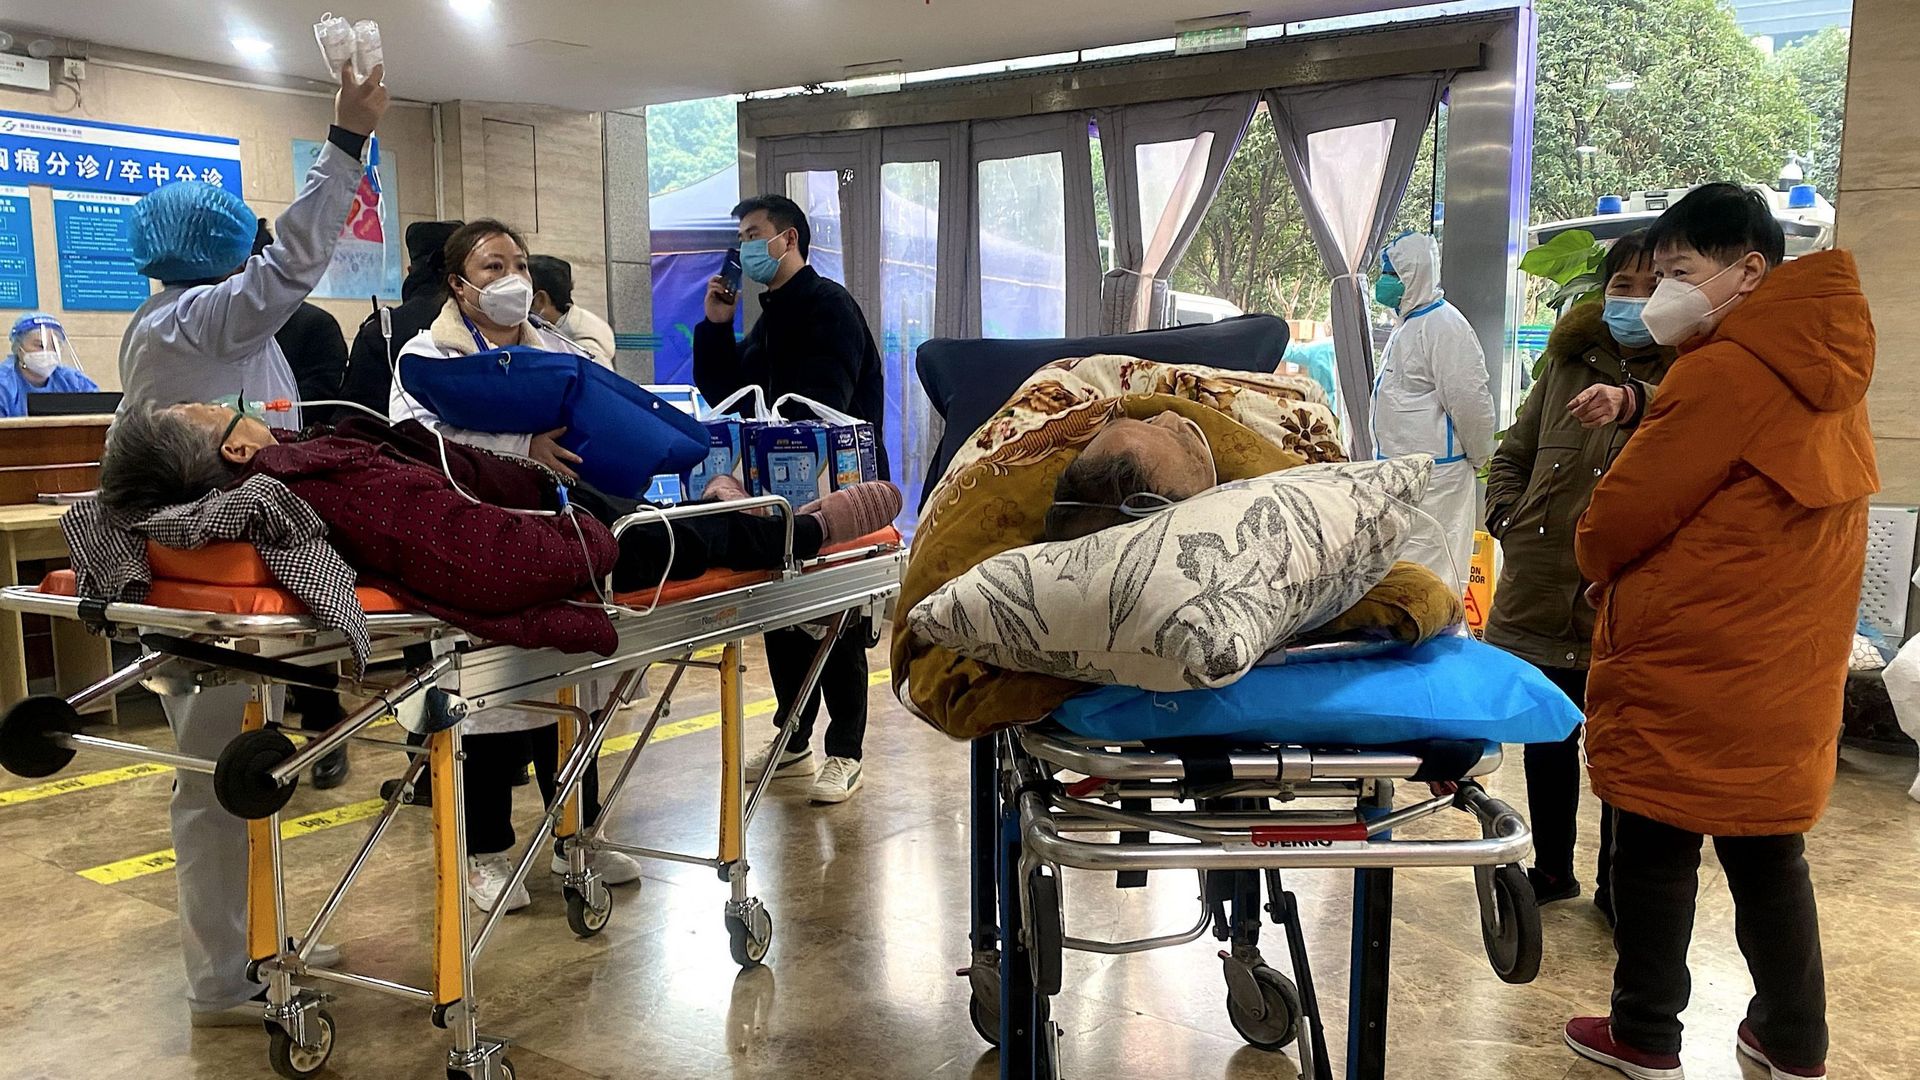 Des patients atteints de Covid-19 sur des civières dans le service des urgences du premier hôpital affilié de l’Université médicale de Chongqing, dans le sud-ouest de la Chine, le 22 décembre 2022.